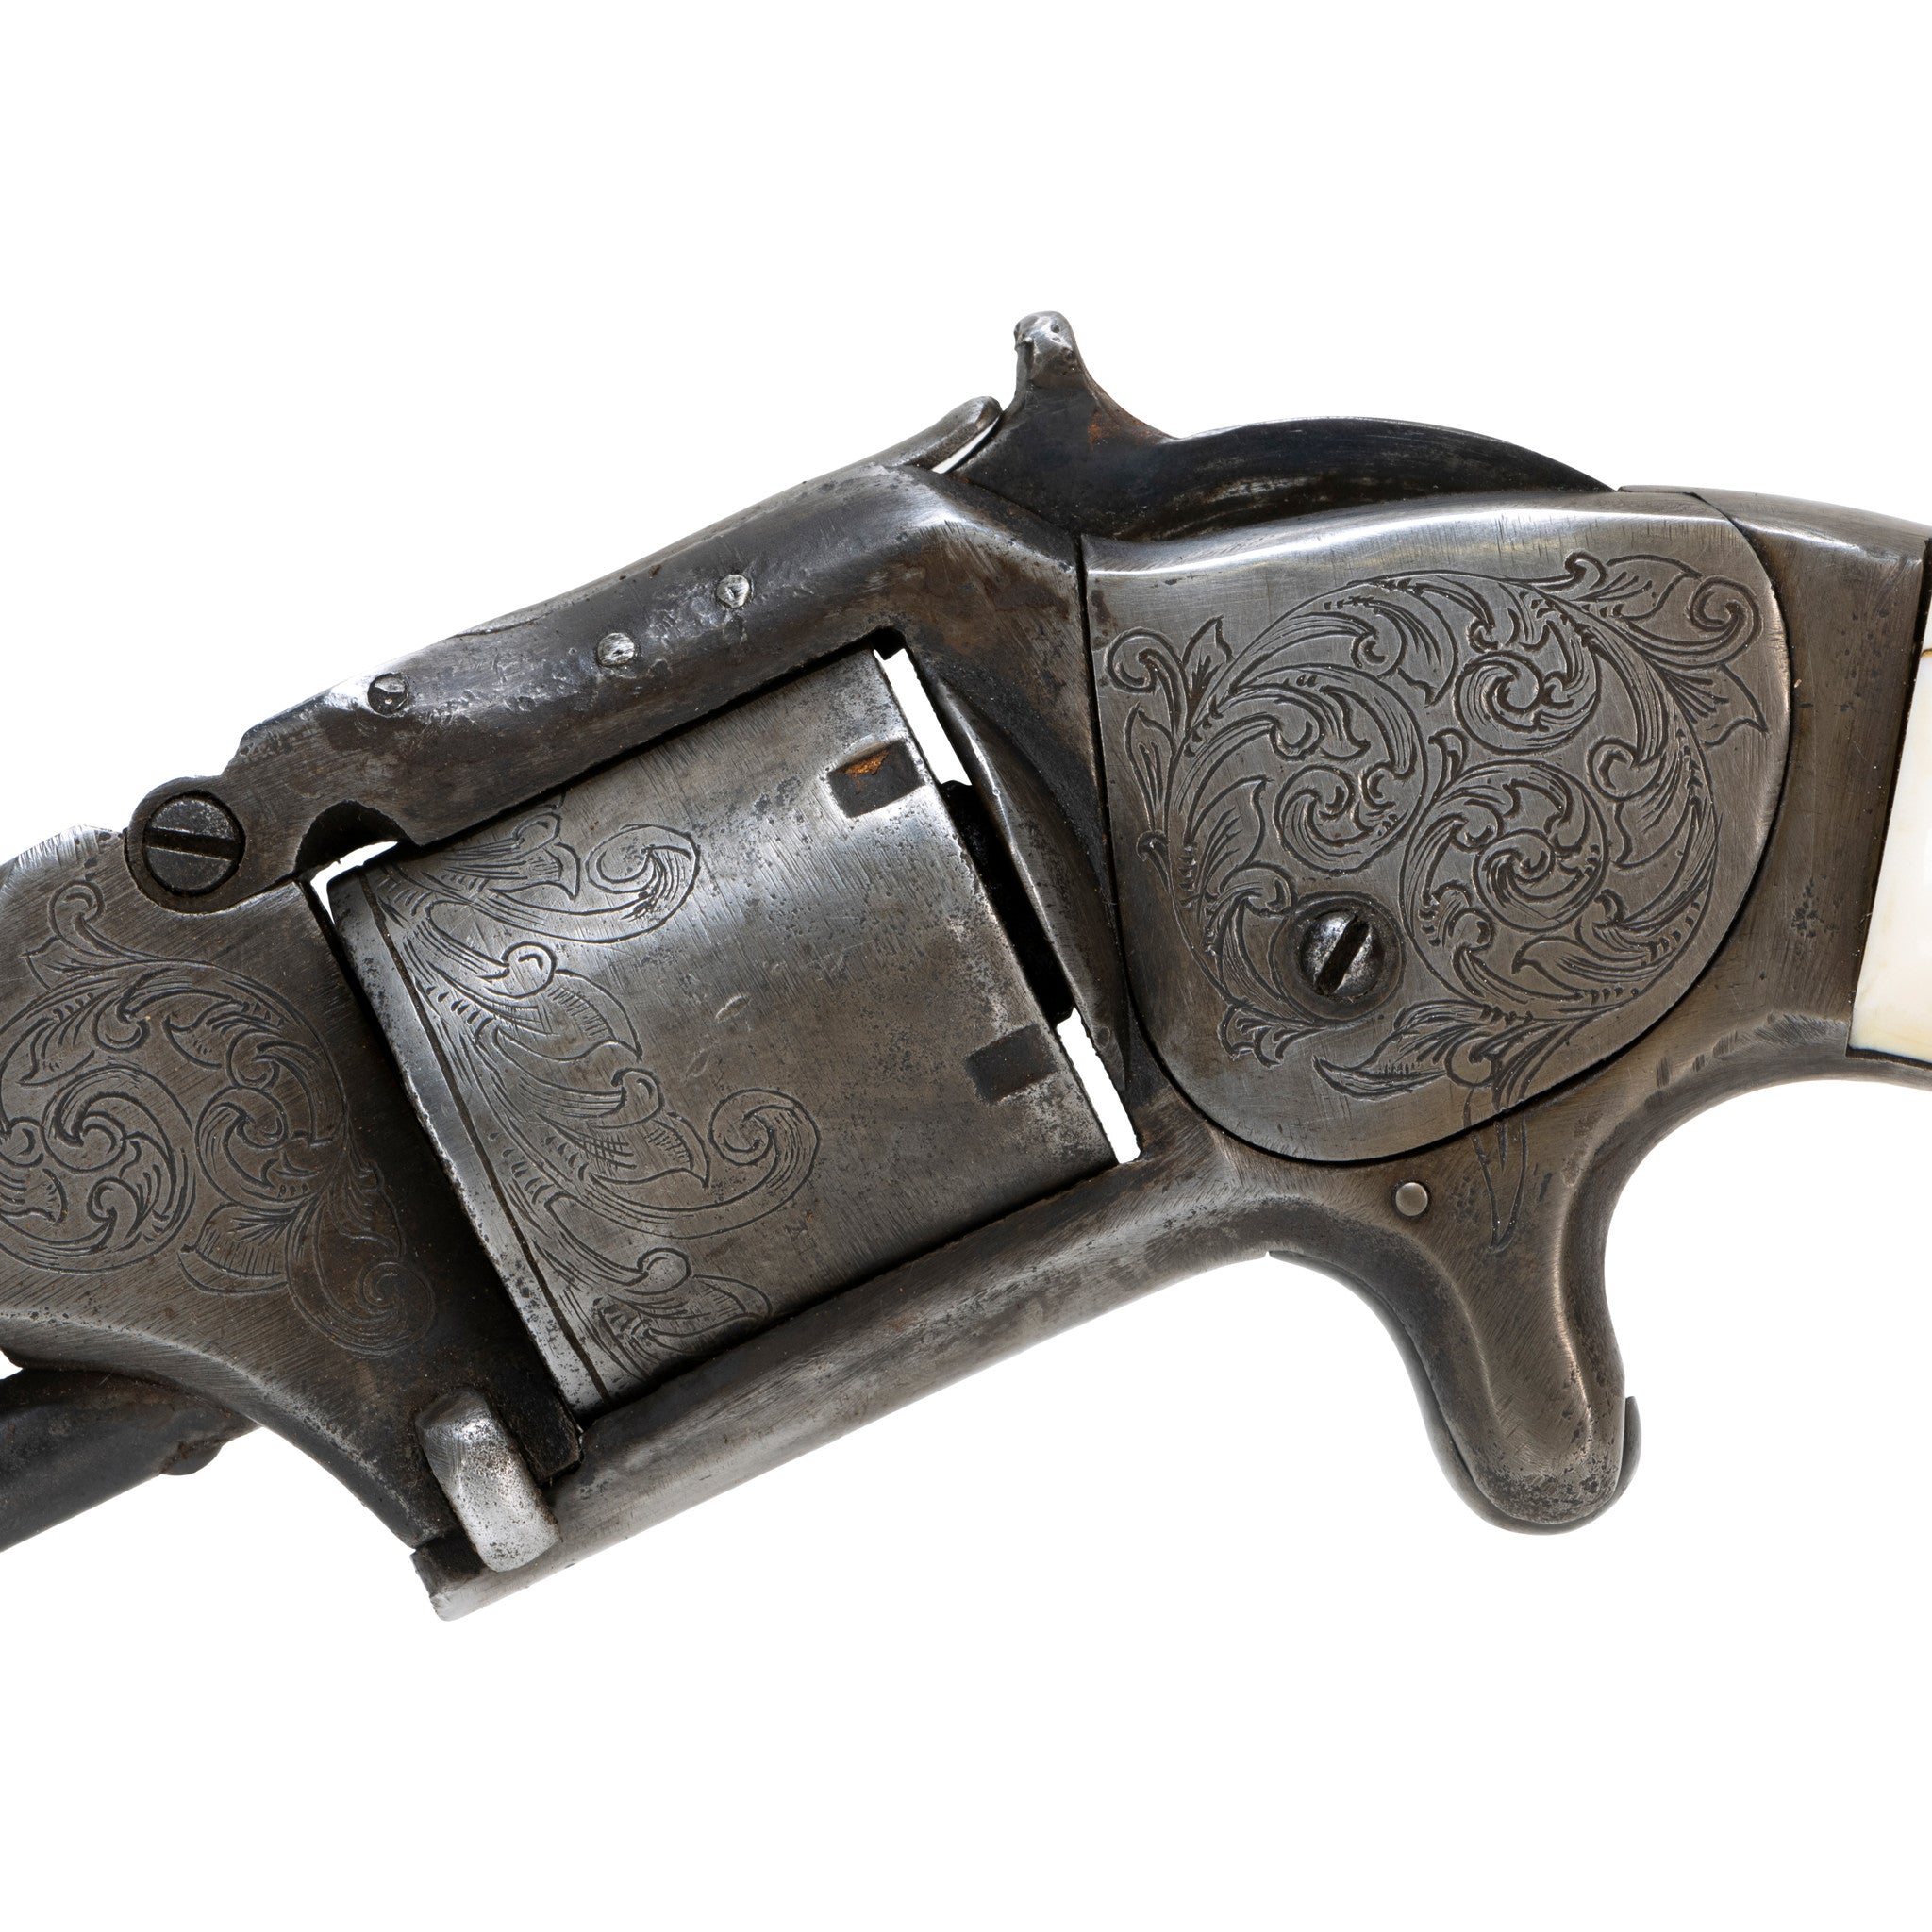 Smith & Wesson Gambler's Gun